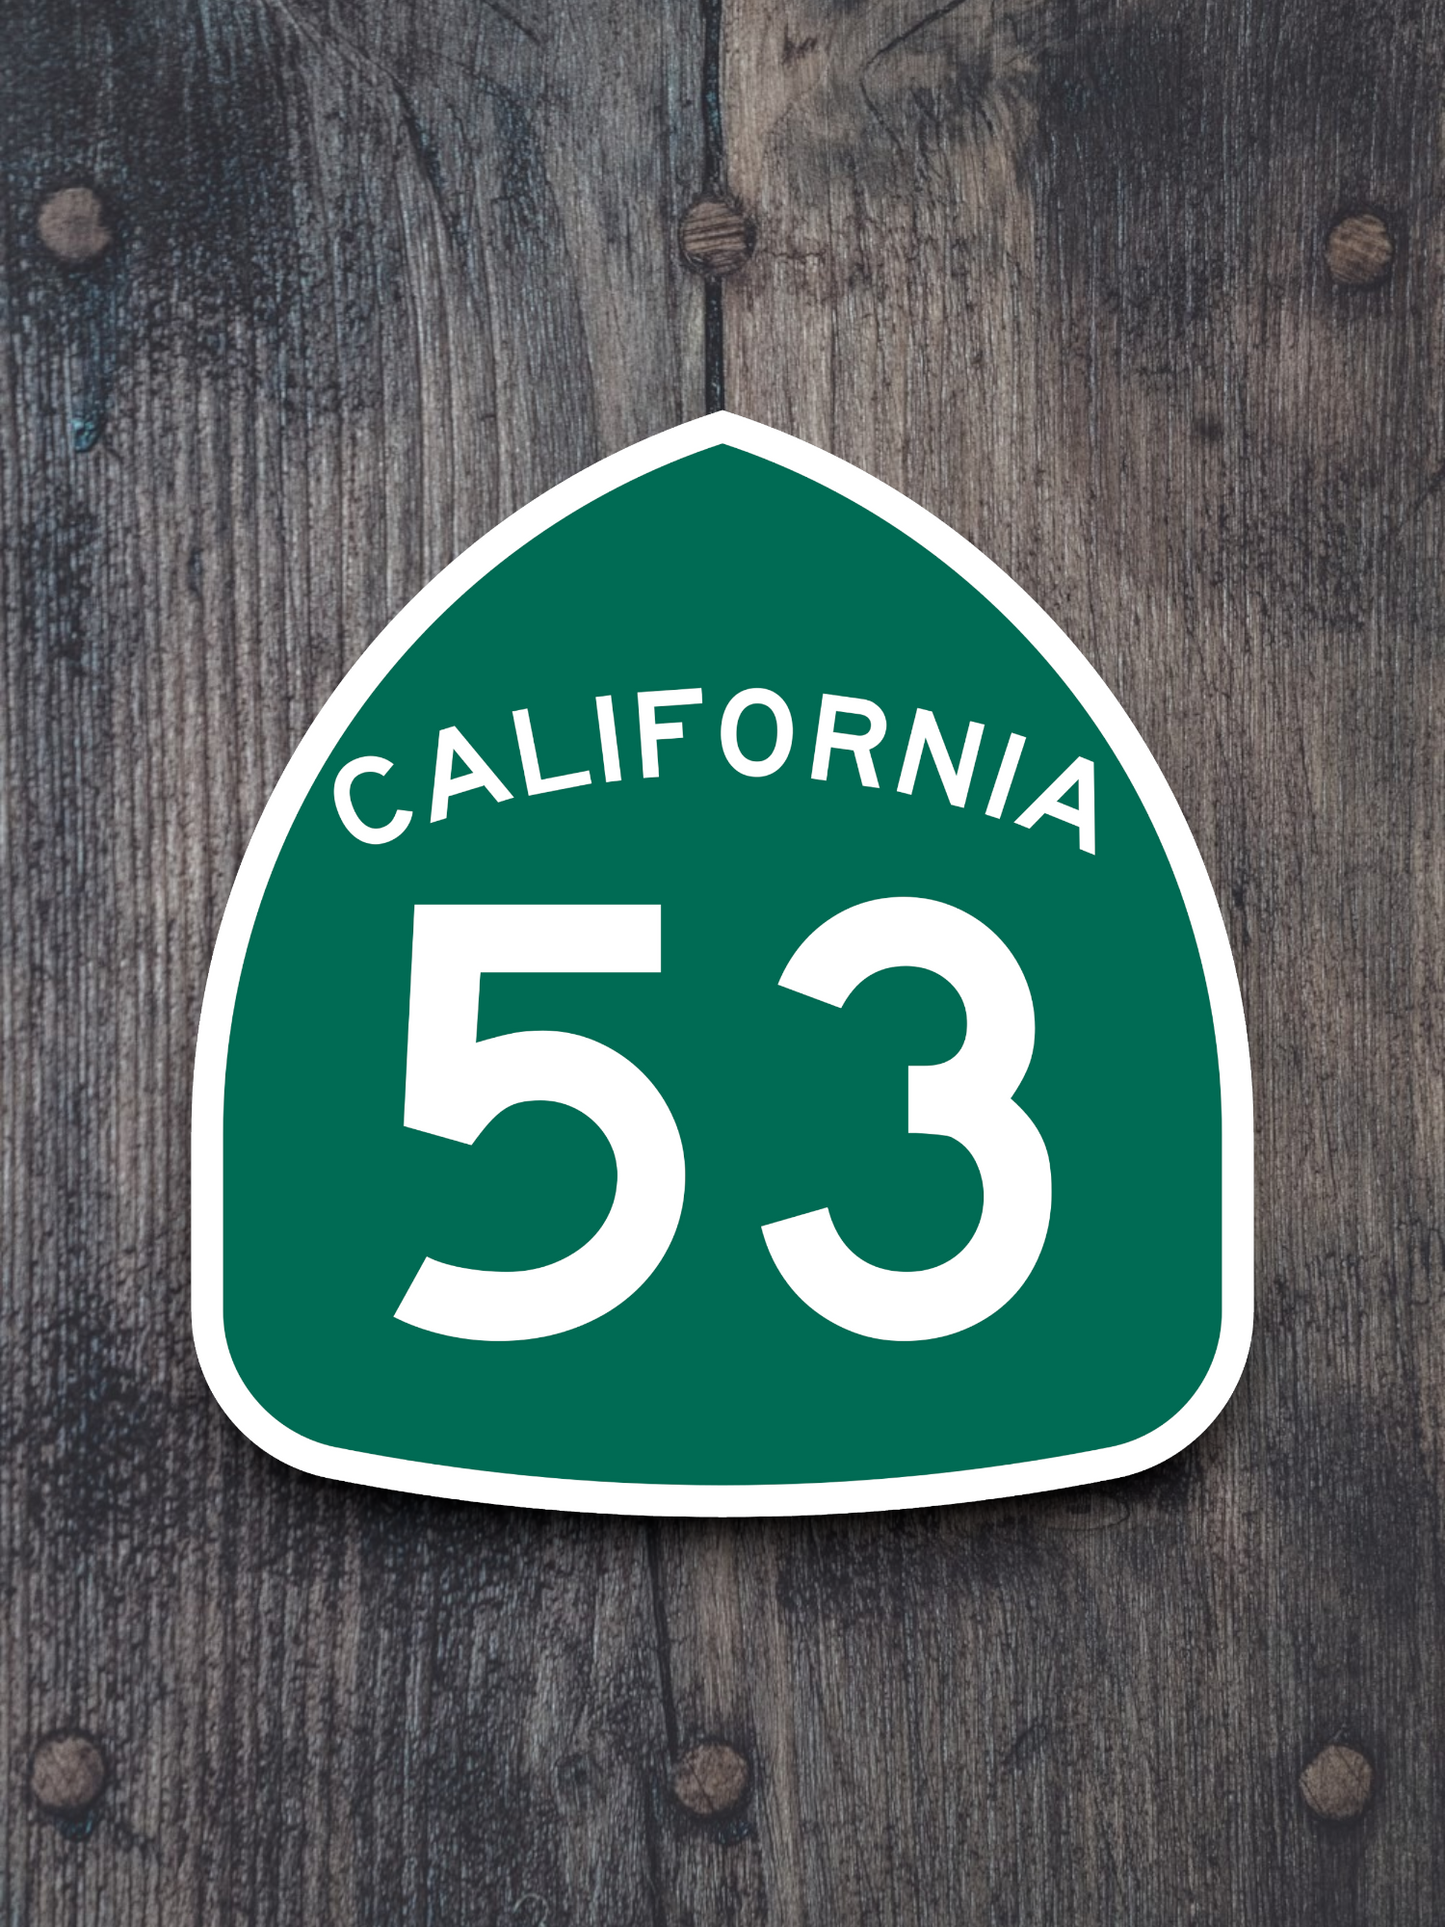 California State Route 53 Sticker